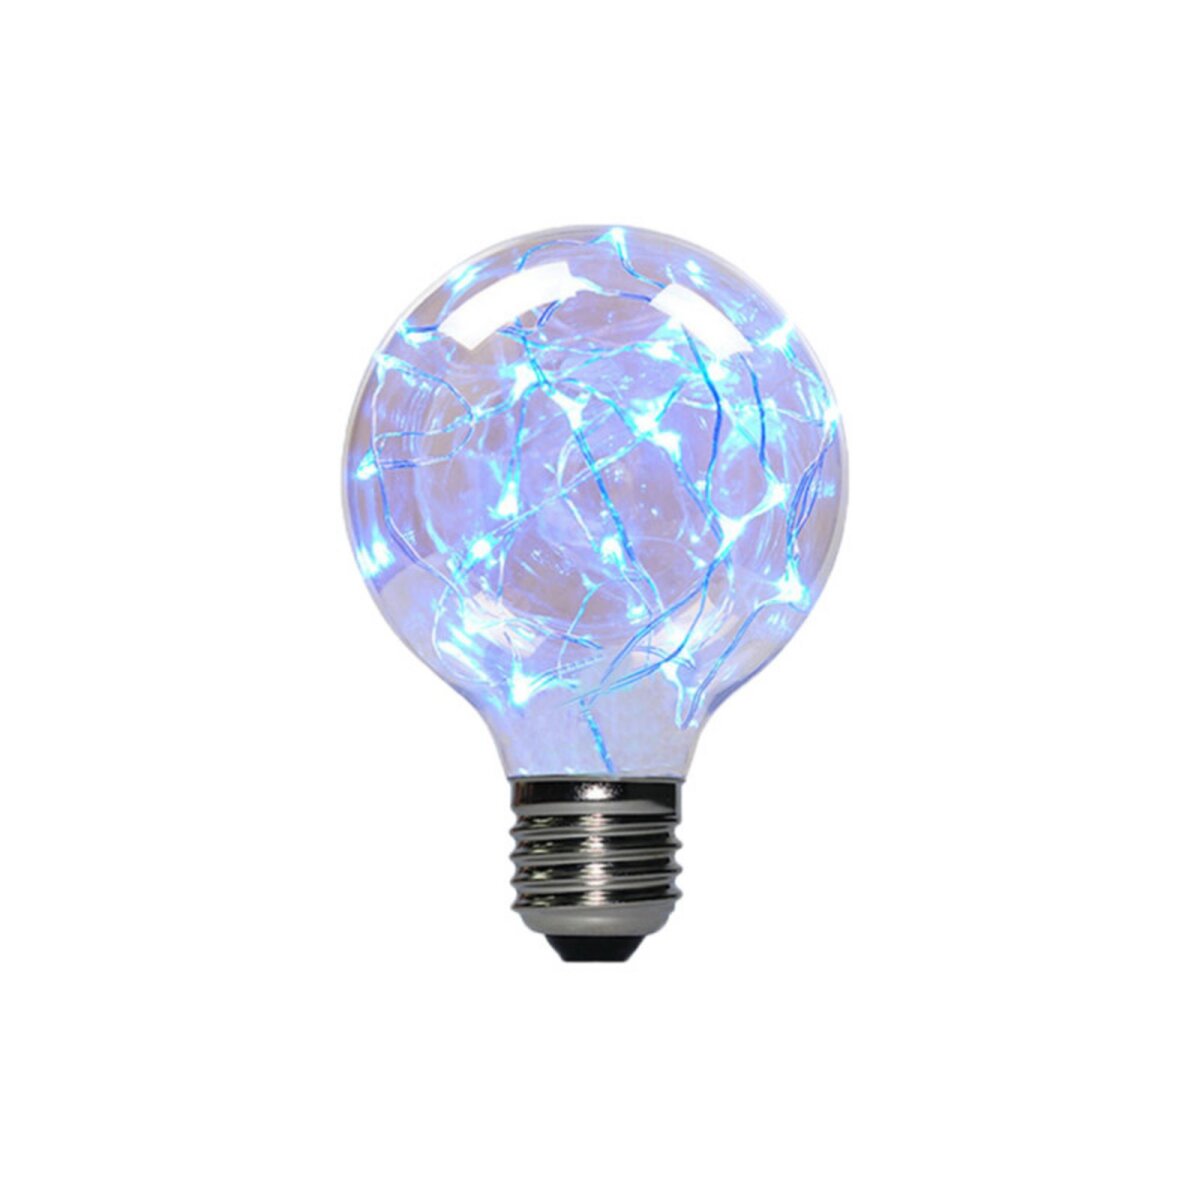  Ampoule LED globe bleue à fil de cuivre XXCELL - 2 W - E27